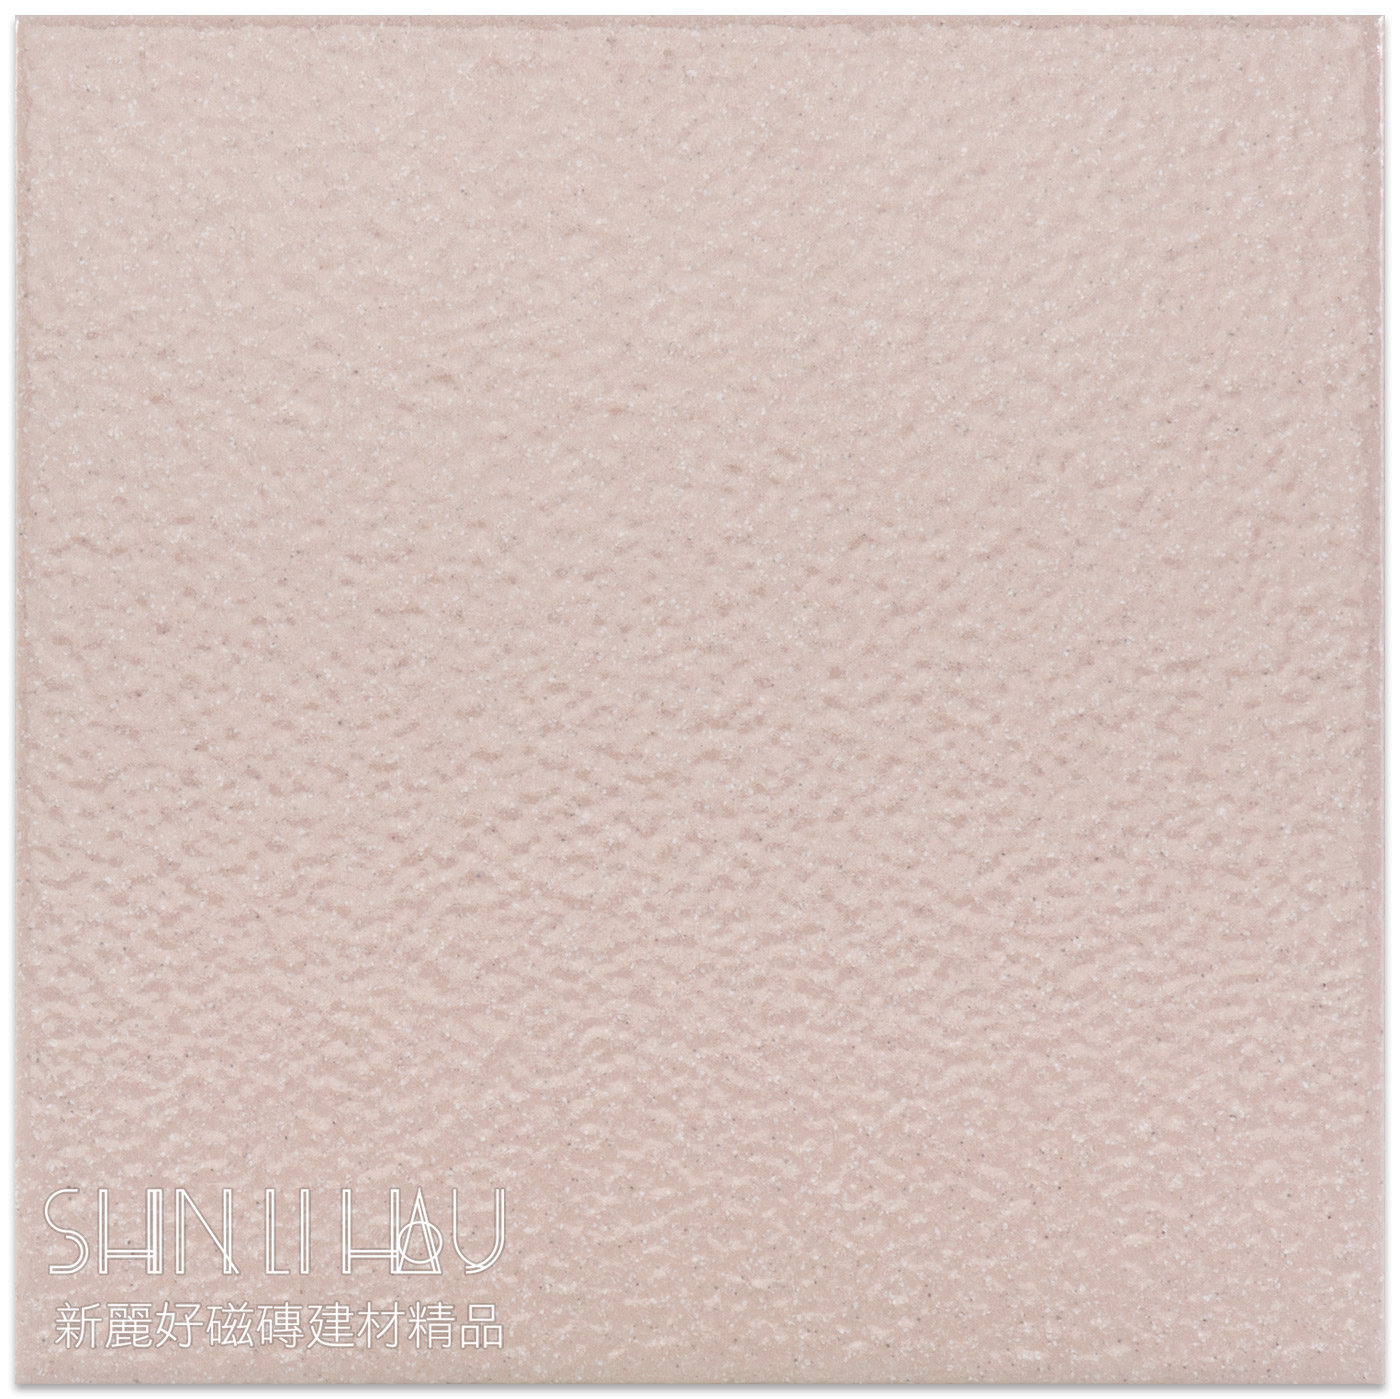 進口磁磚特價-凡蒂斯地磚 【每坪特價2835元】 - 粉紅色